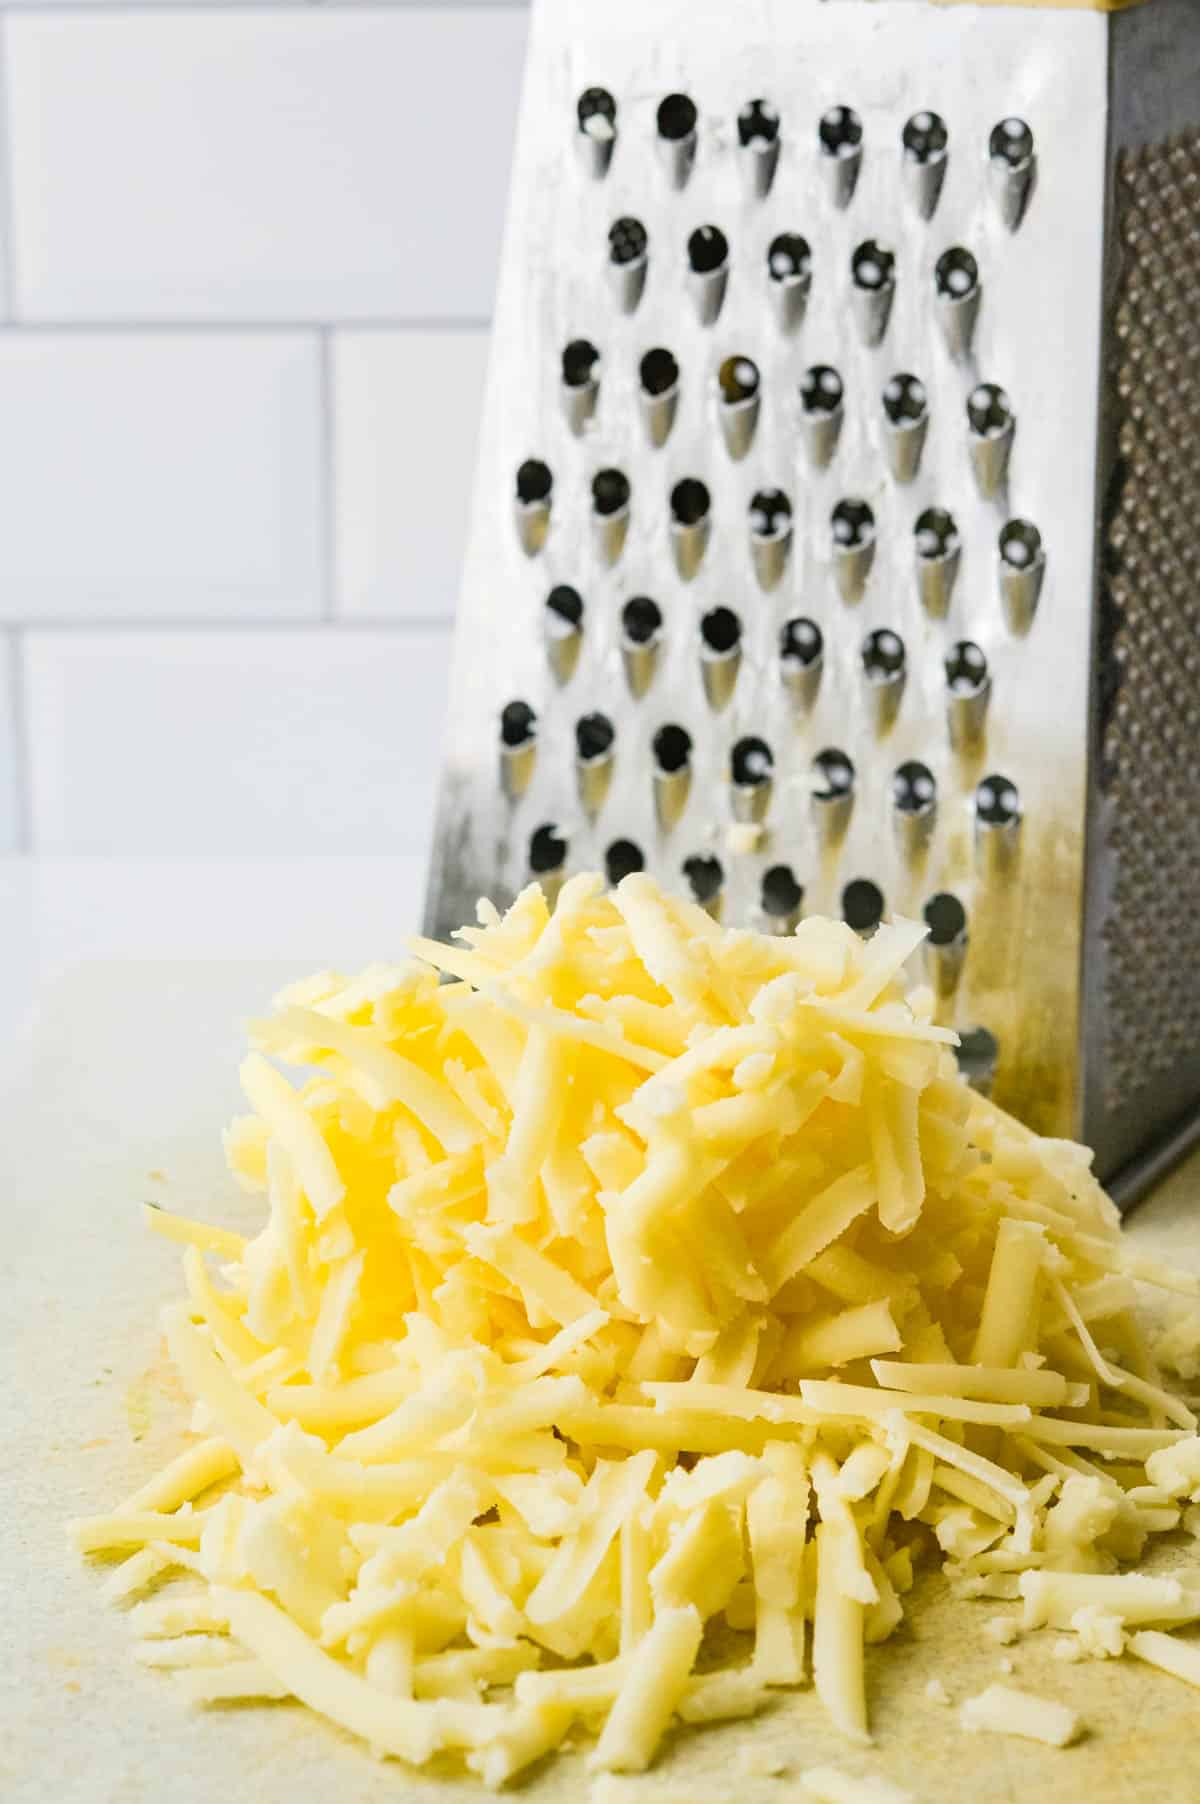 shredding cheddar cheese.